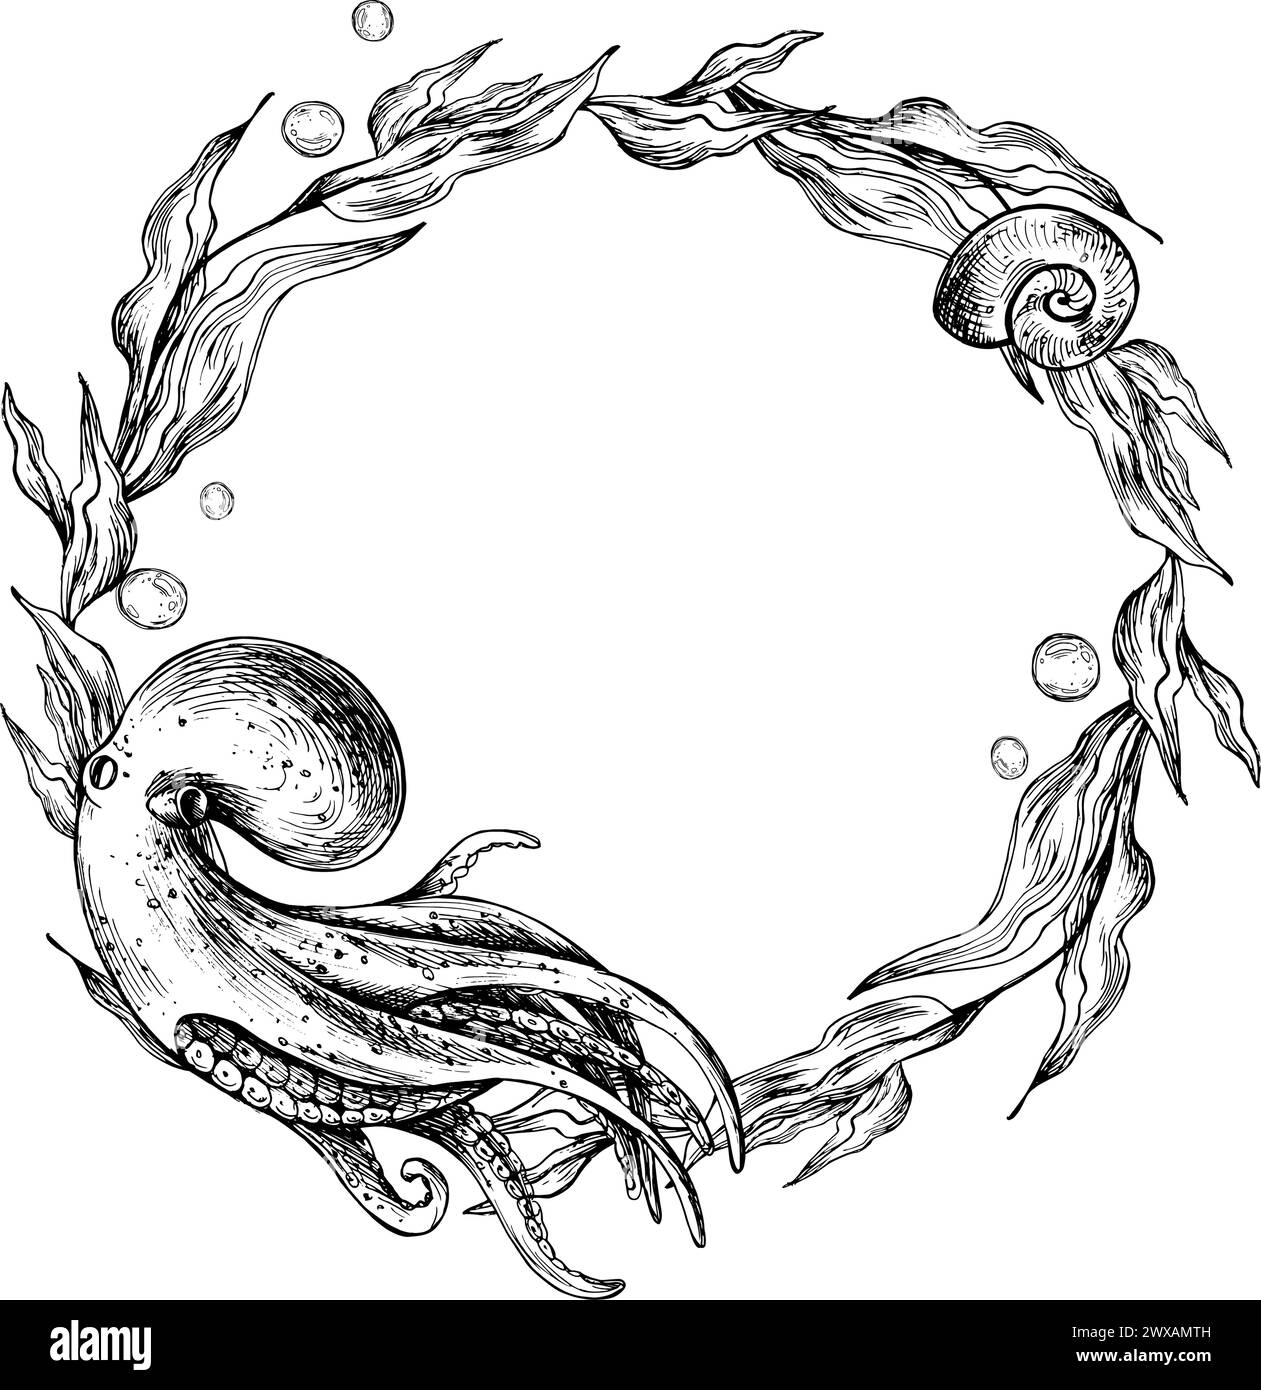 Clipart du monde sous-marin avec des animaux marins poulpe, méduses corail et algues. Illustration graphique dessinée à la main à l'encre noire. Couronne circulaire, cadre EPS Illustration de Vecteur